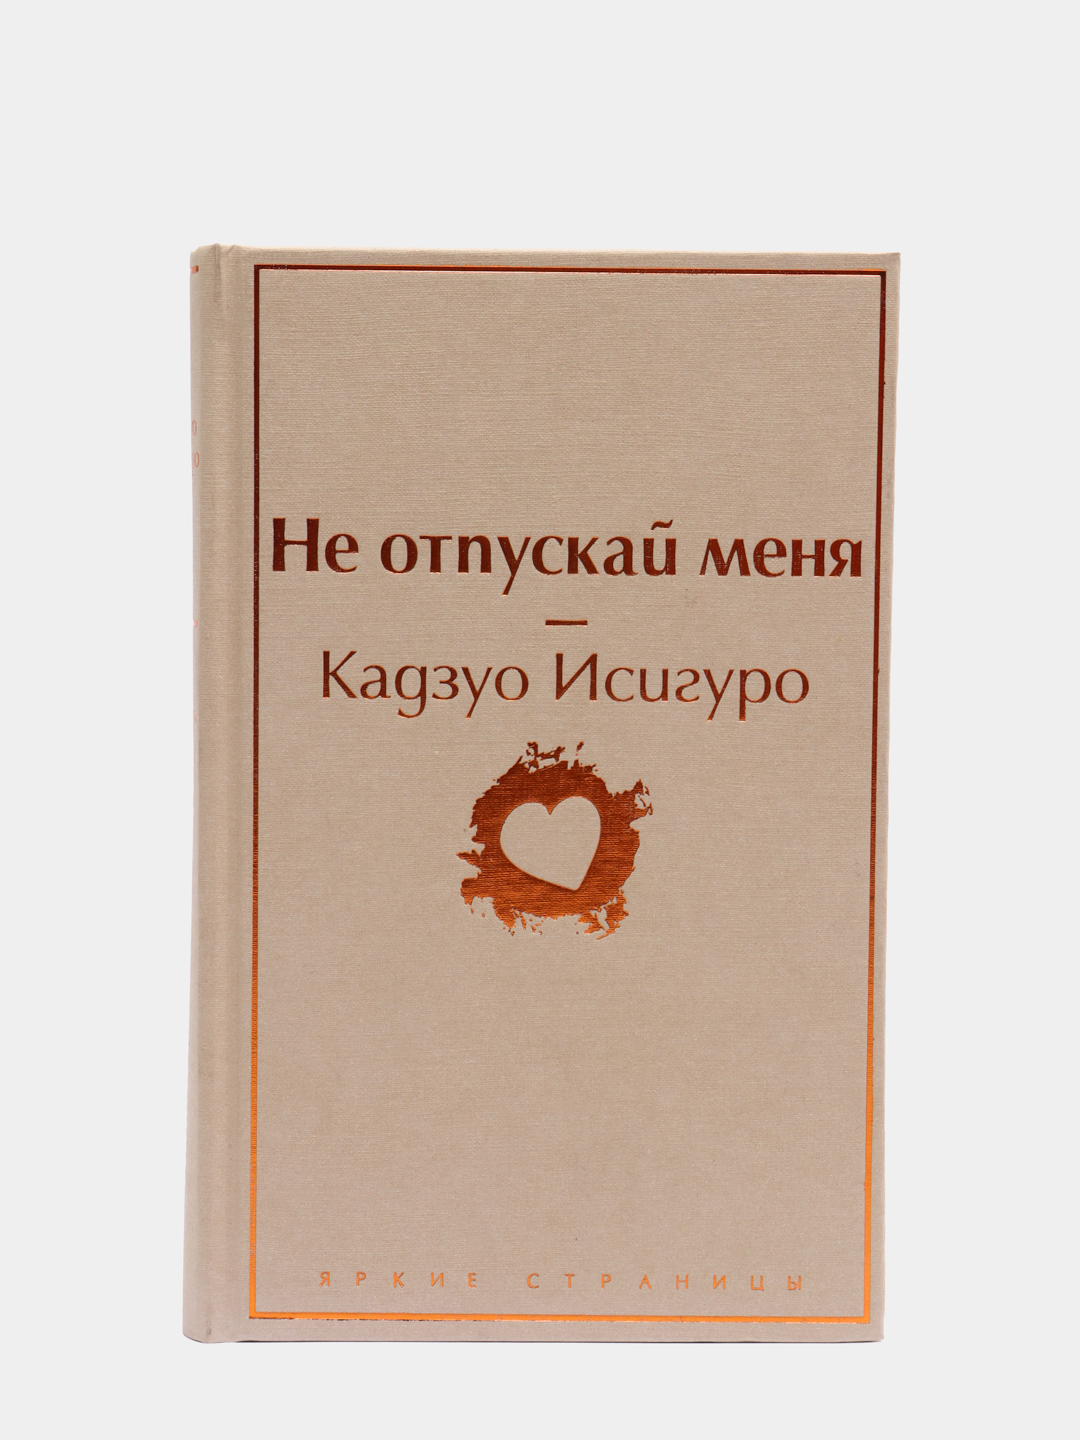 Не отпускай меня книга кадзуо отзывы. Кадзуо Исигуро не отпускай меня. Не отпускай меня Кадзуо Исигуро книга. Исигуро не отпускай меня украинское издание. Не отпускай меня Кадзуо Исигуро книга электронный.